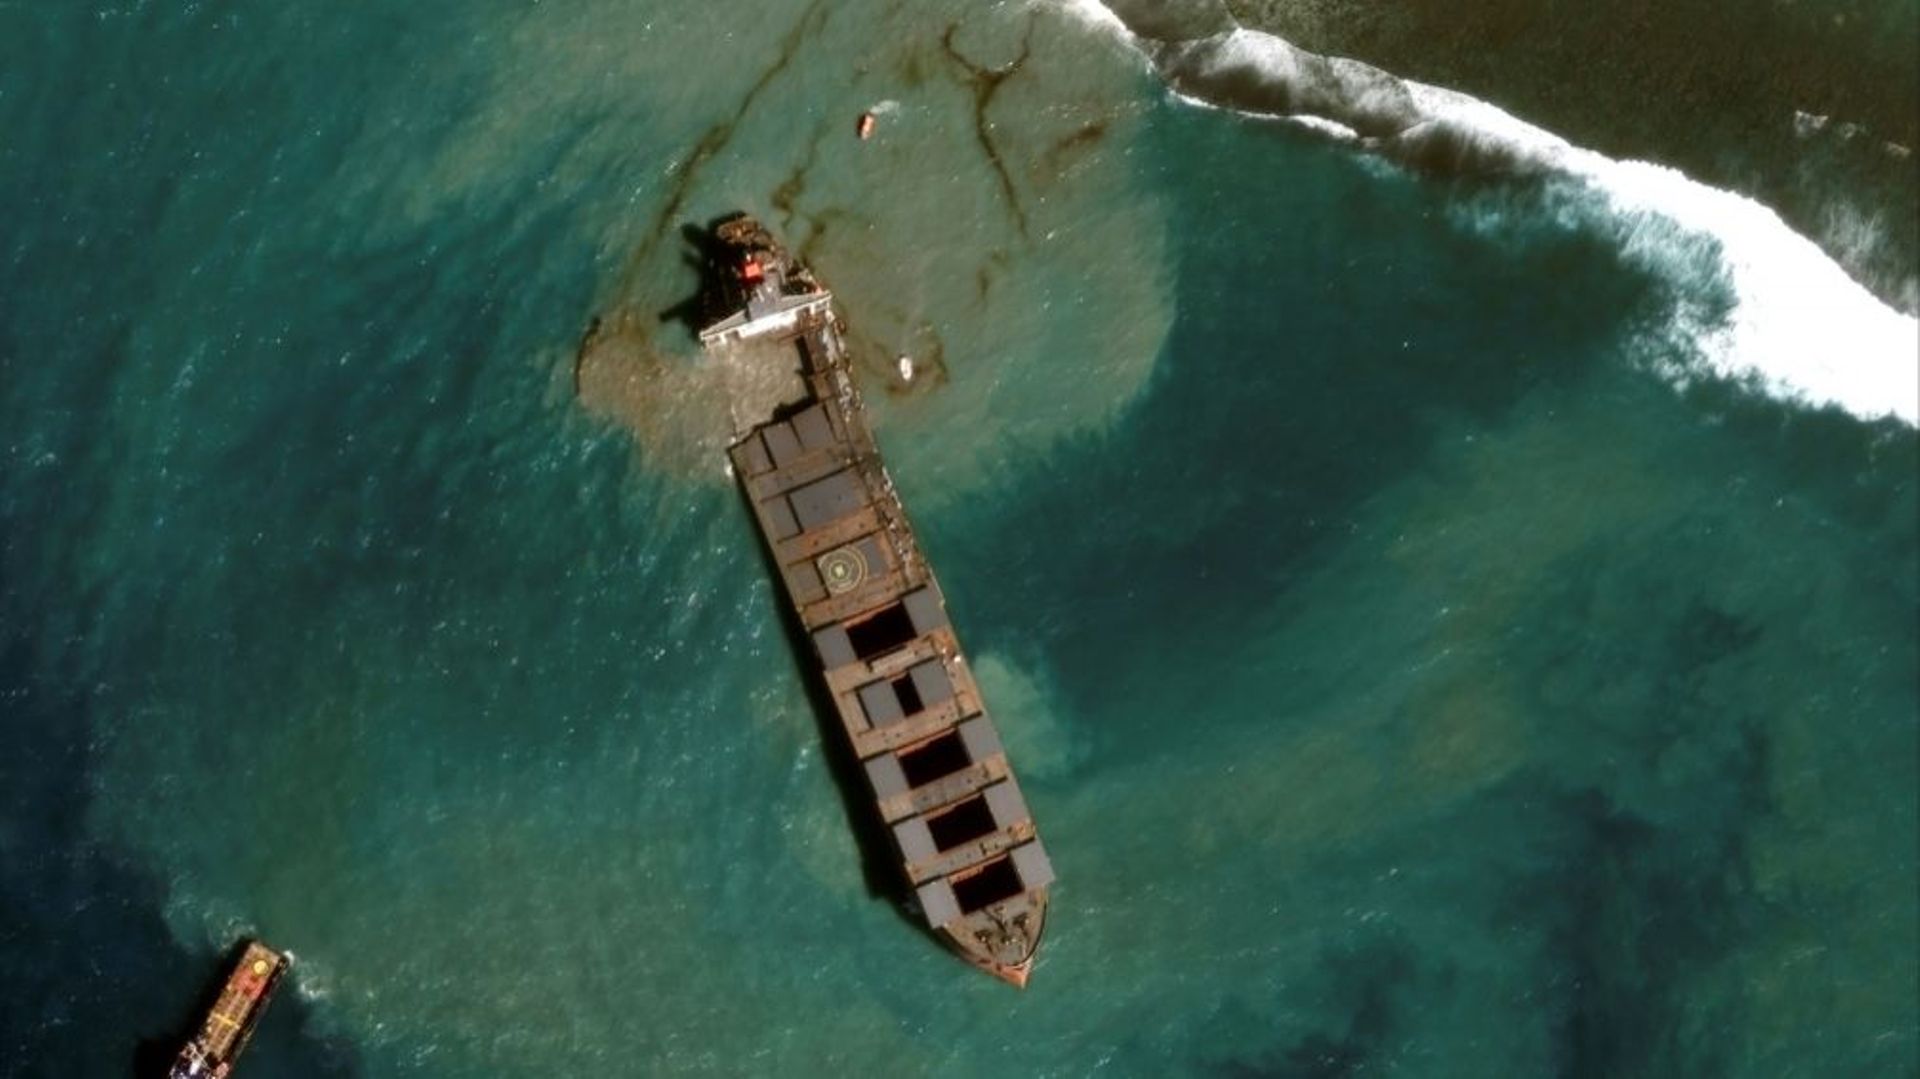 Image diffusée par Maxar Technologie le 18 août 2020 du vraquier MV Wahashio qui s'est brisé en deux au large des côtes de l'Ile Maurice